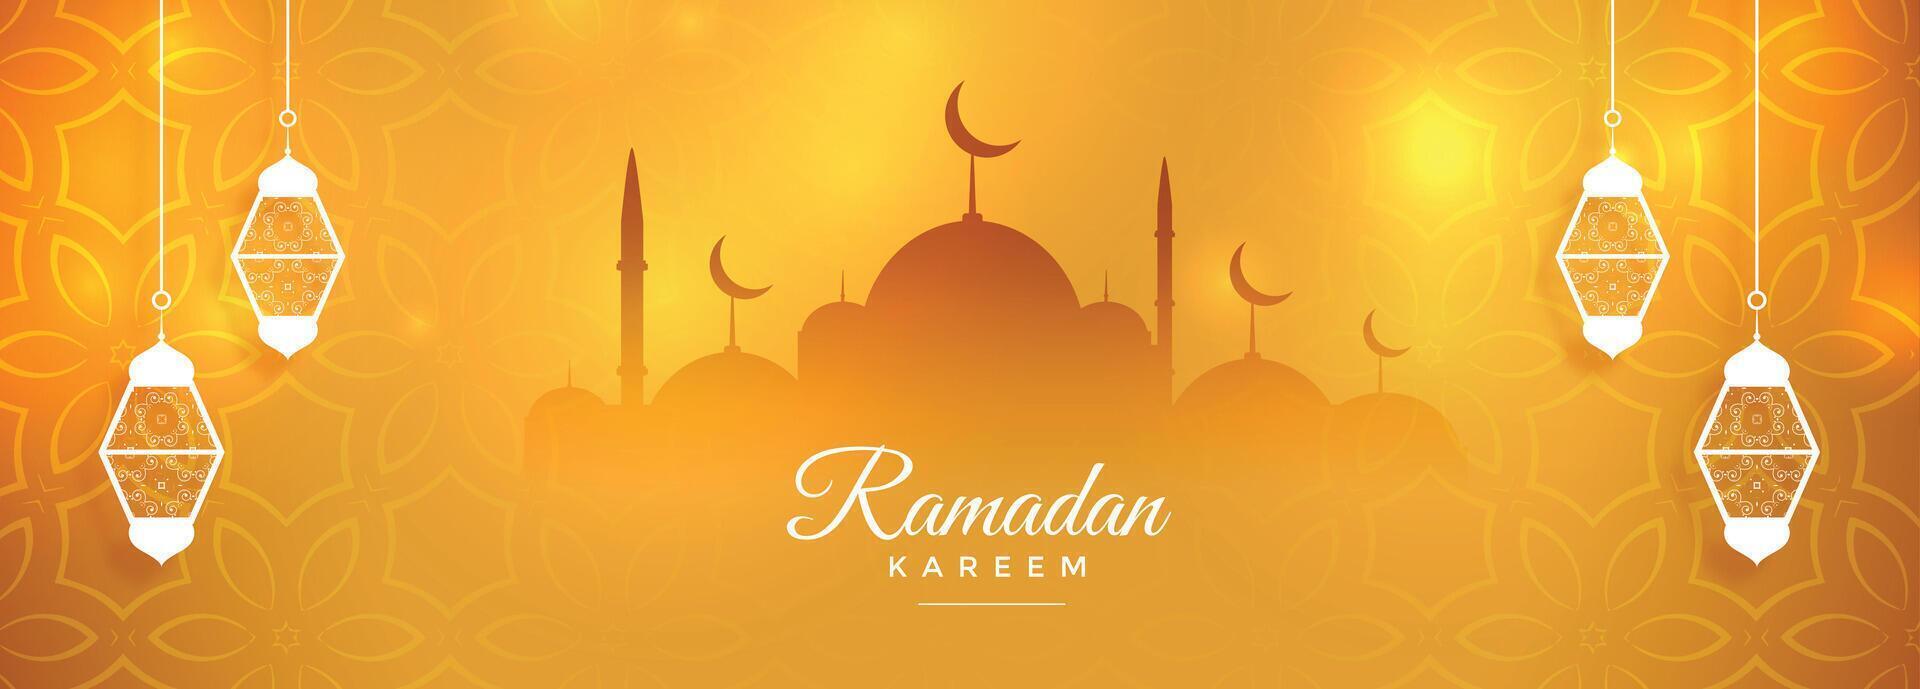 simpatico Ramadan kareem mese celebrazione bandiera design vettore